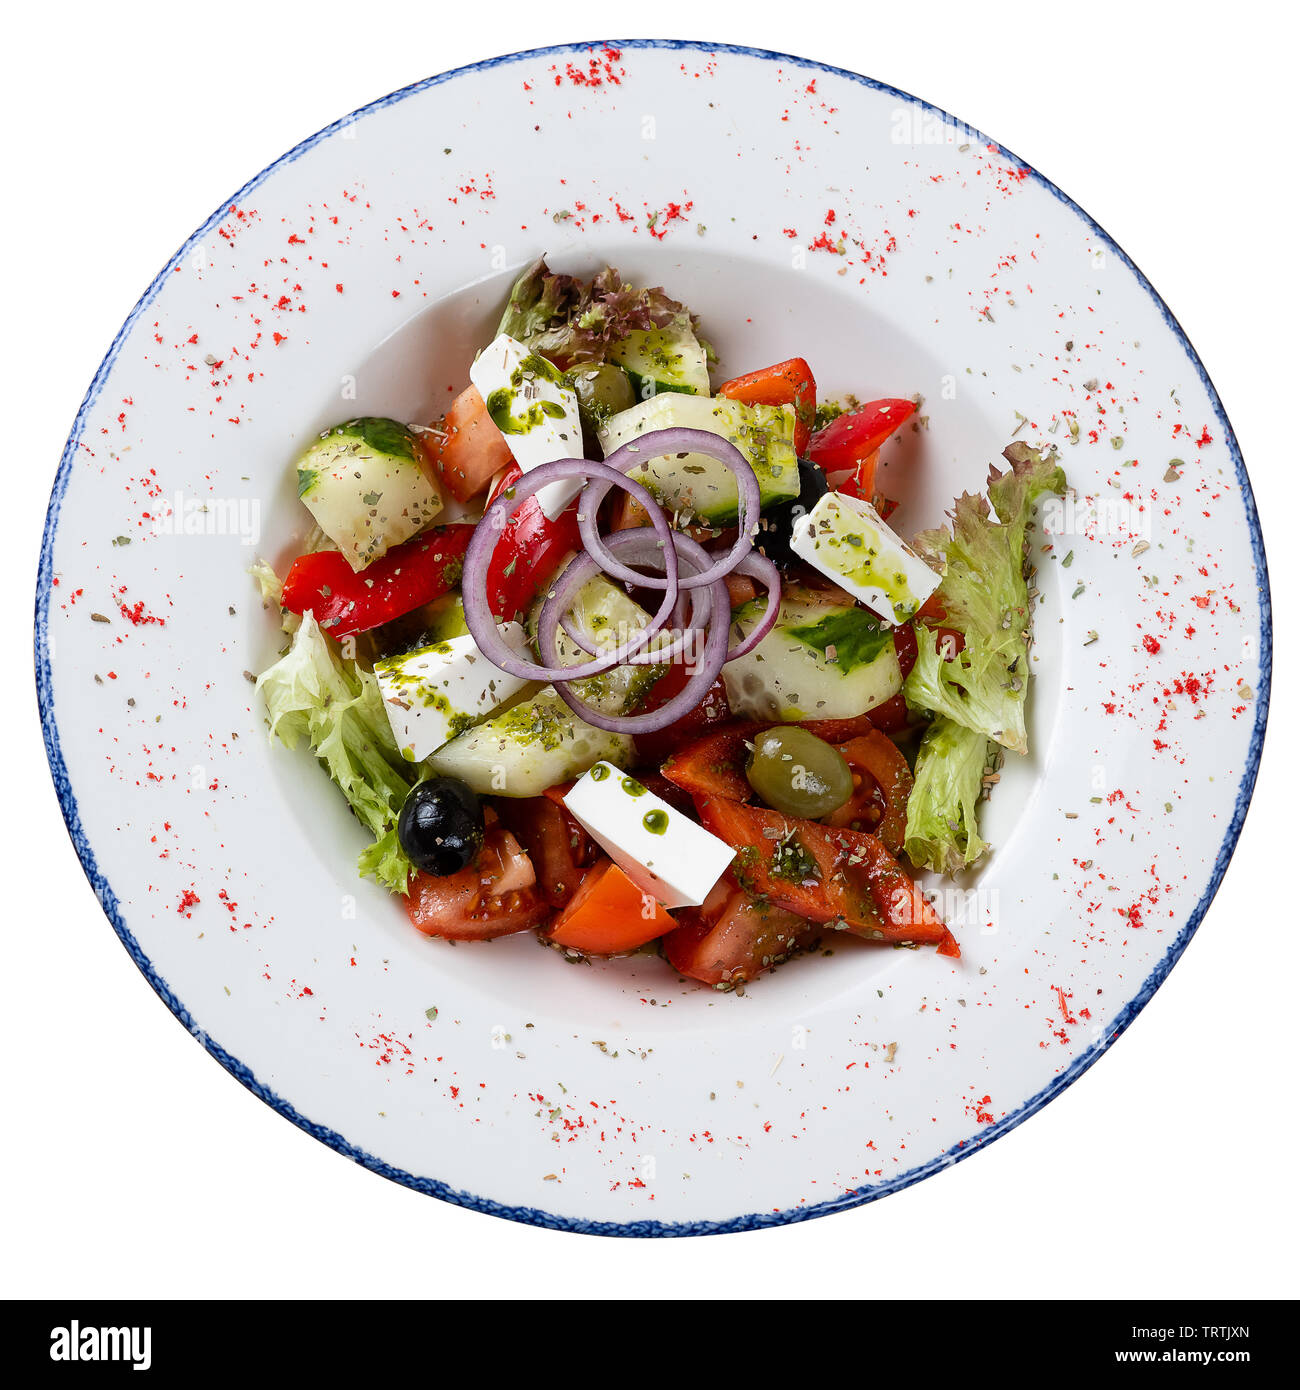 Griechischer Salat in einem runden Teller auf einem weißen Hintergrund. Salat von Tomaten, Gurken, Käse, Kräuter, gewürzt mit Öl Stockfoto